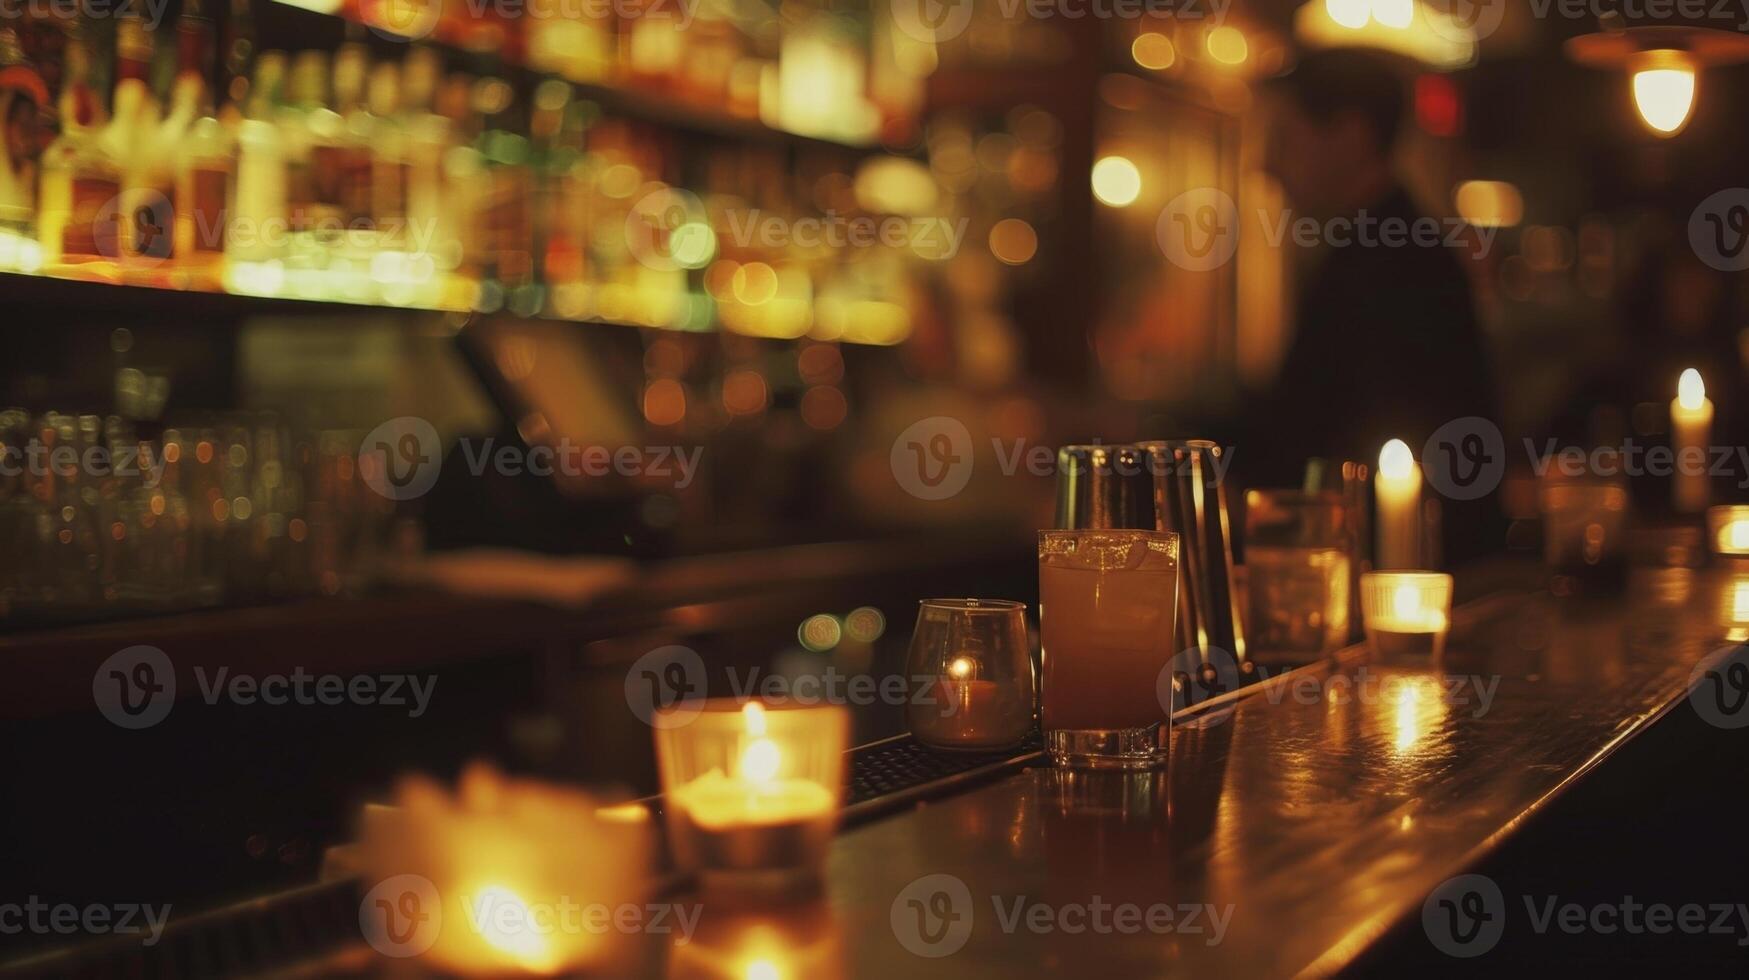 baristi sapientemente mescolare code dietro a il bar loro movimenti illuminato di il caldo splendore di il candele. 2d piatto cartone animato foto